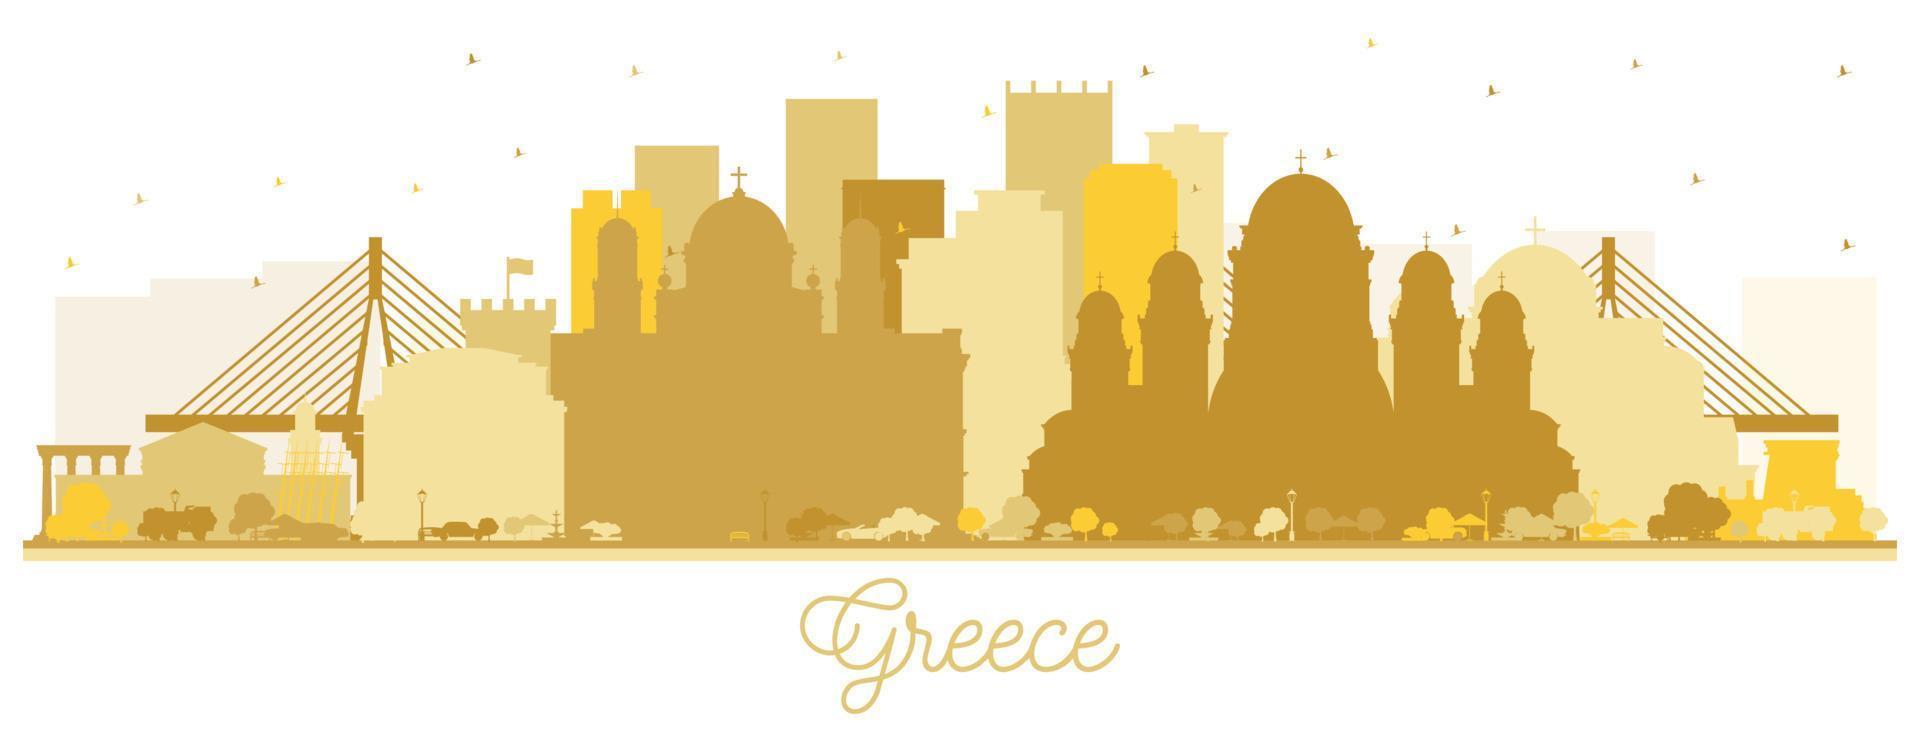 bem-vindo à silhueta do horizonte da cidade da grécia com edifícios dourados isolados no branco. vetor